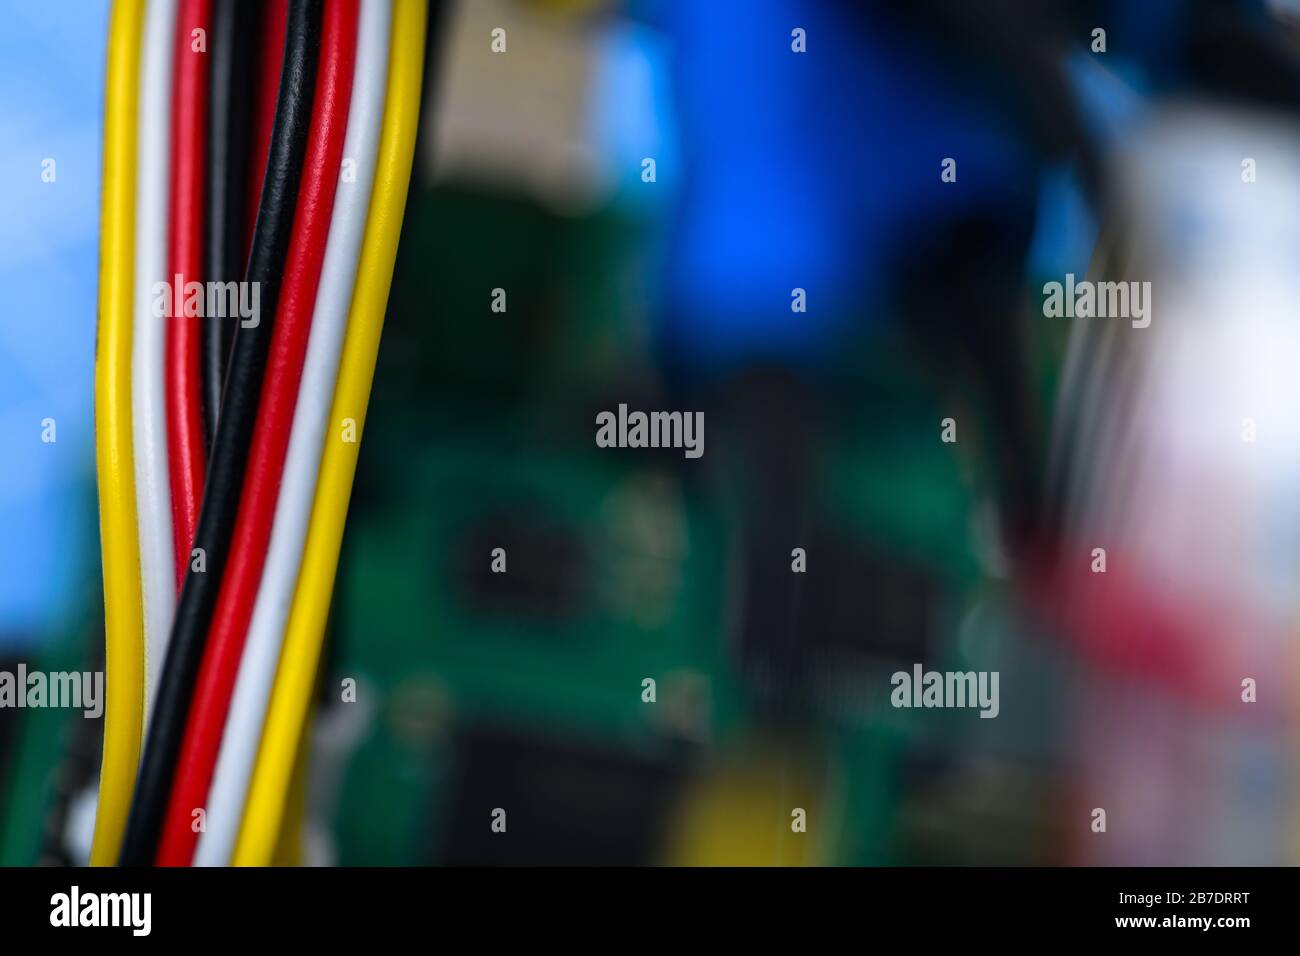 Schwarze, rote, weiße und gelbe Kabel auf einem Hintergrund, der nicht fokussiert ist. Stockfoto